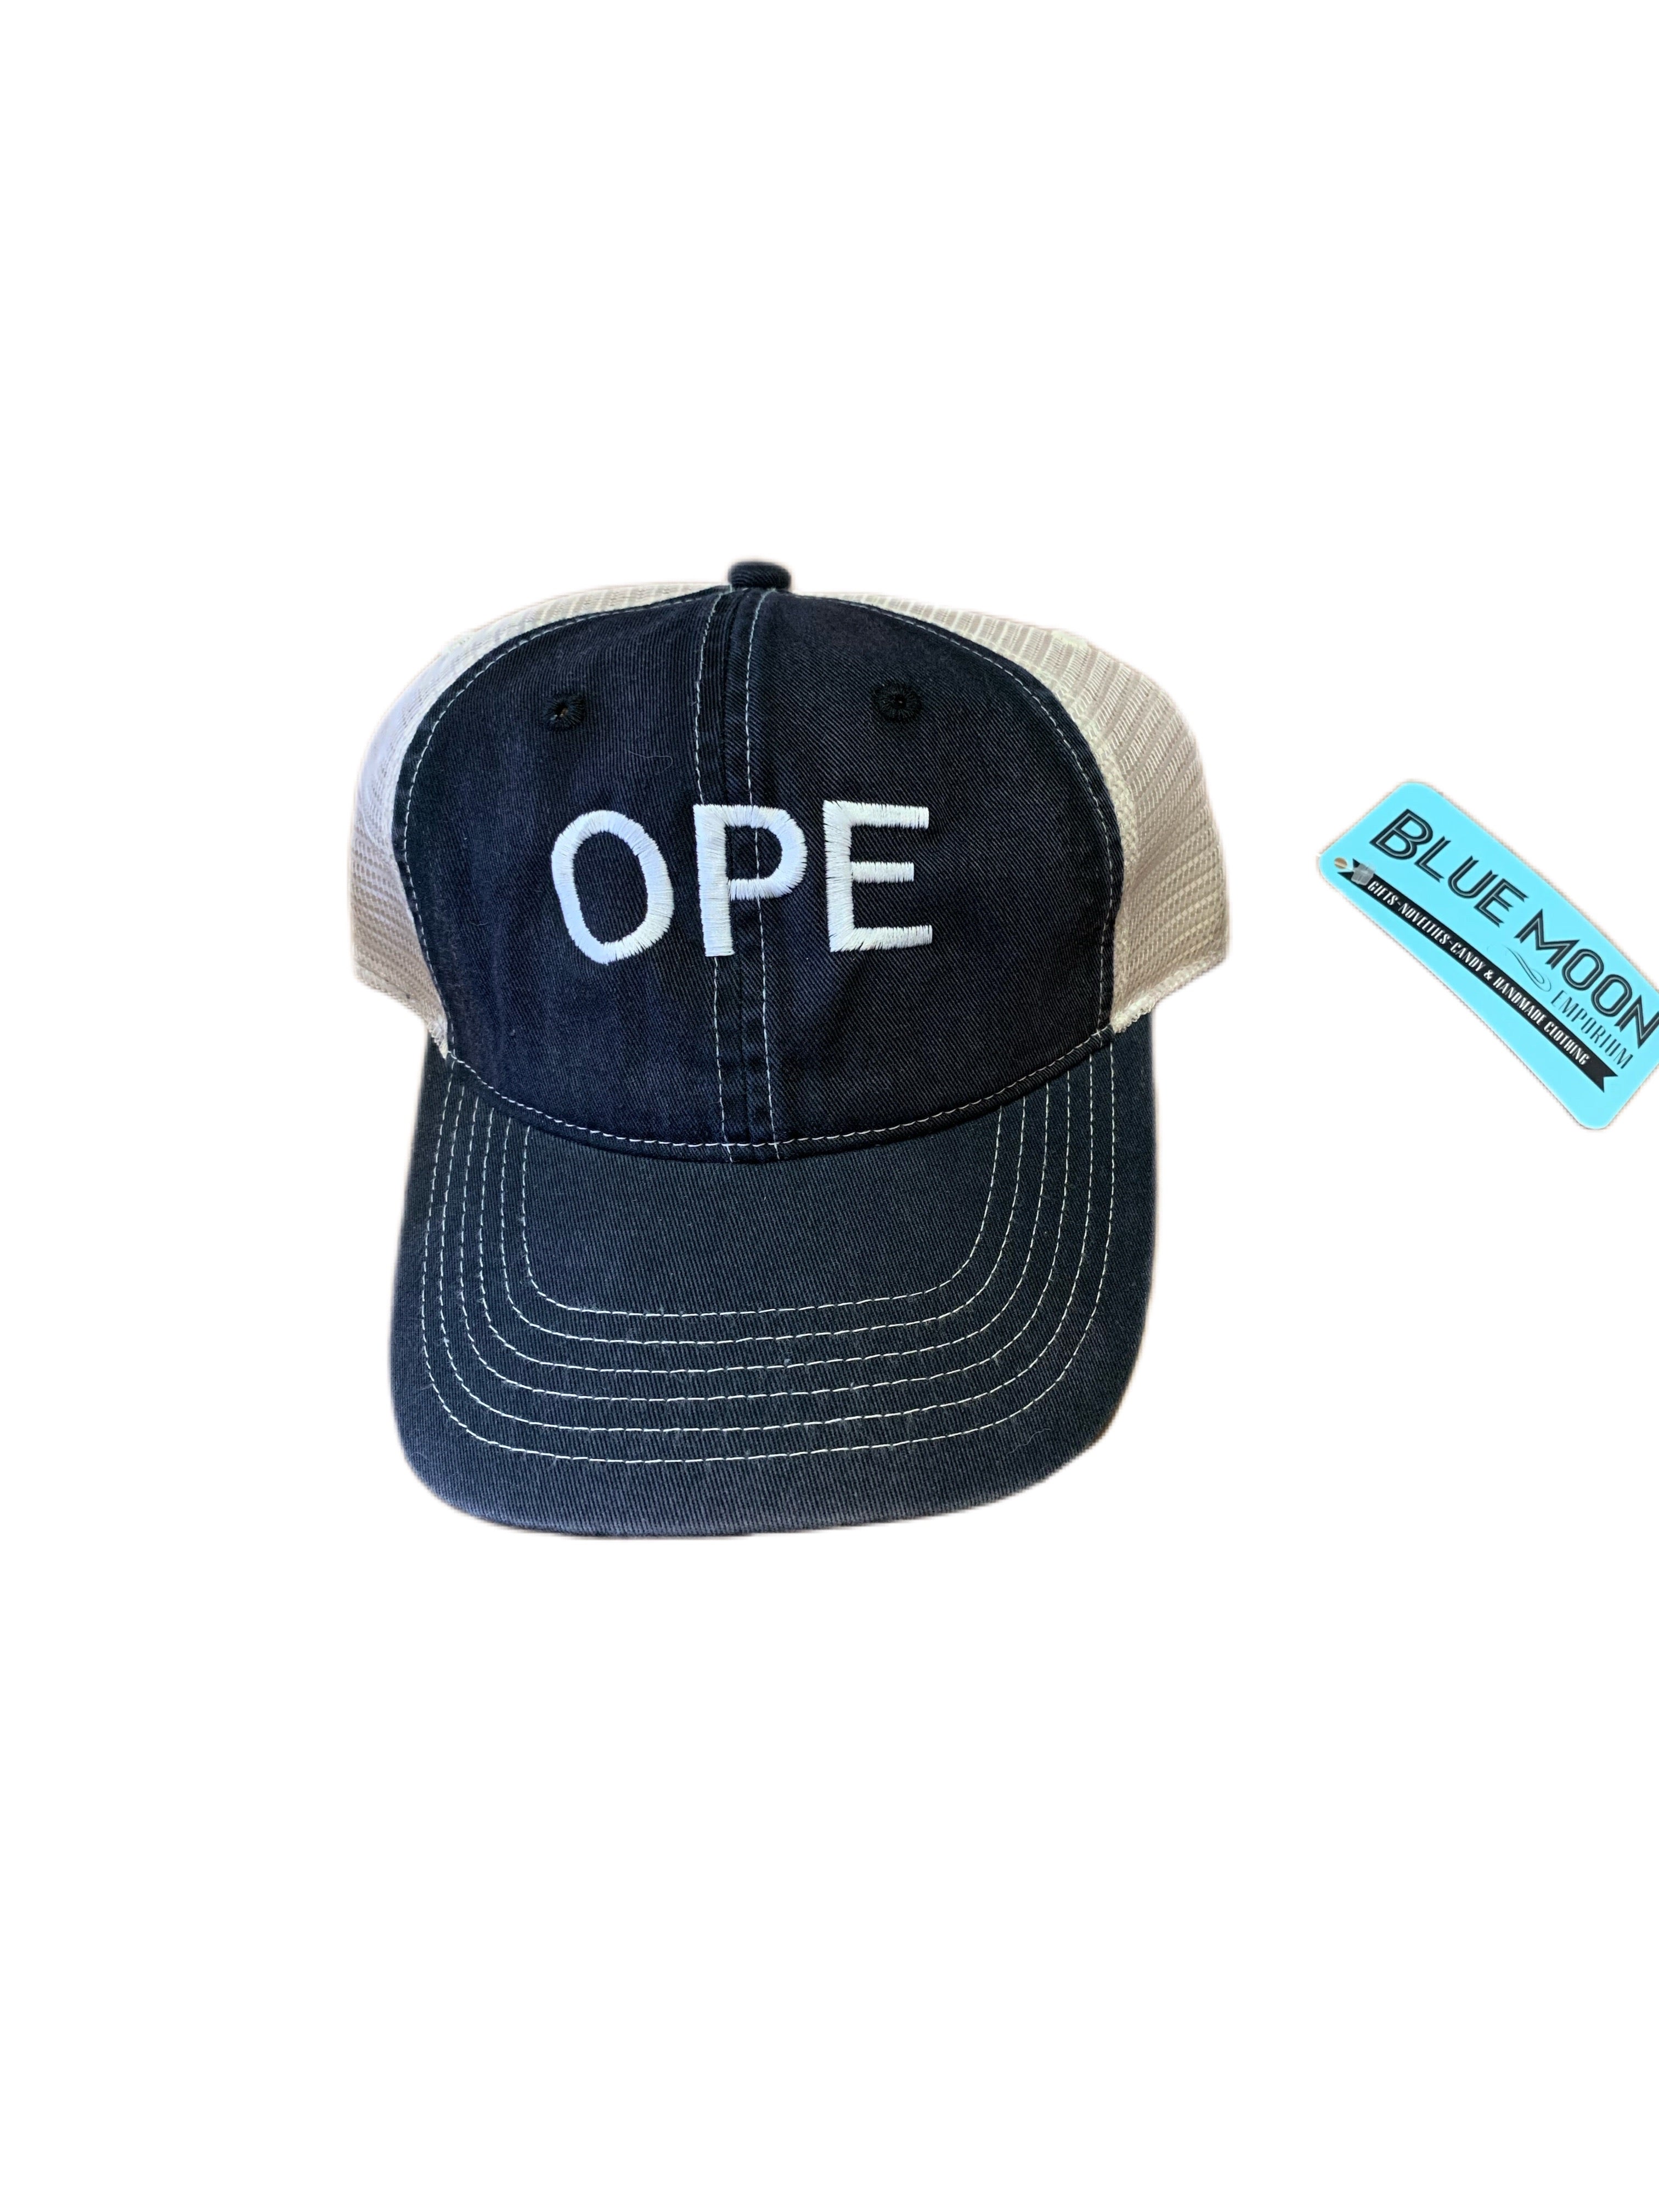 OPE Trucker Hat